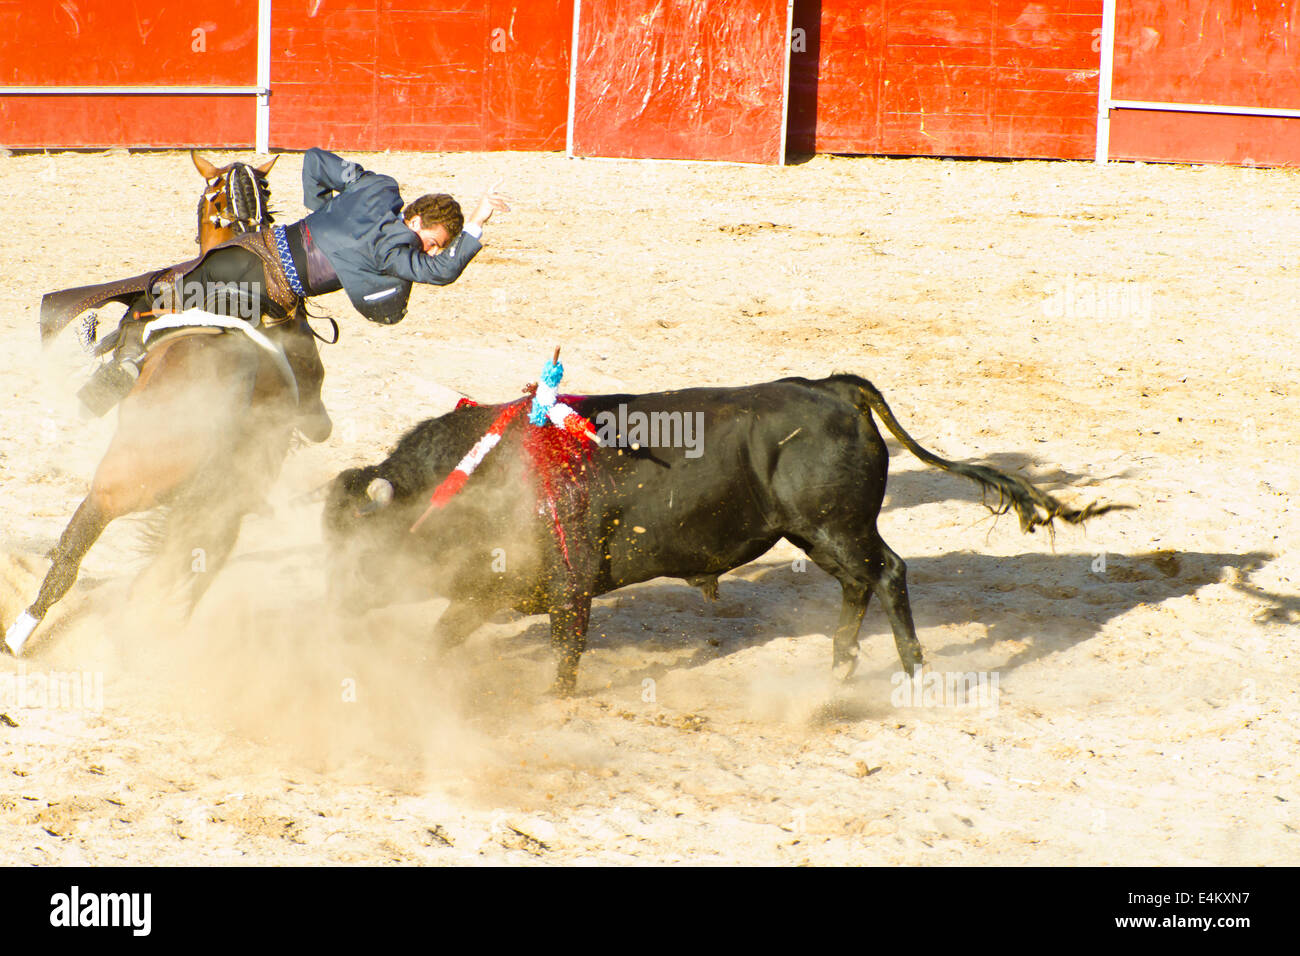 MADRID, ESPAGNE - 10 SEPTEMBRE : torero à cheval, corrida. 10 septembre 2010 à Madrid (Espagne) Banque D'Images